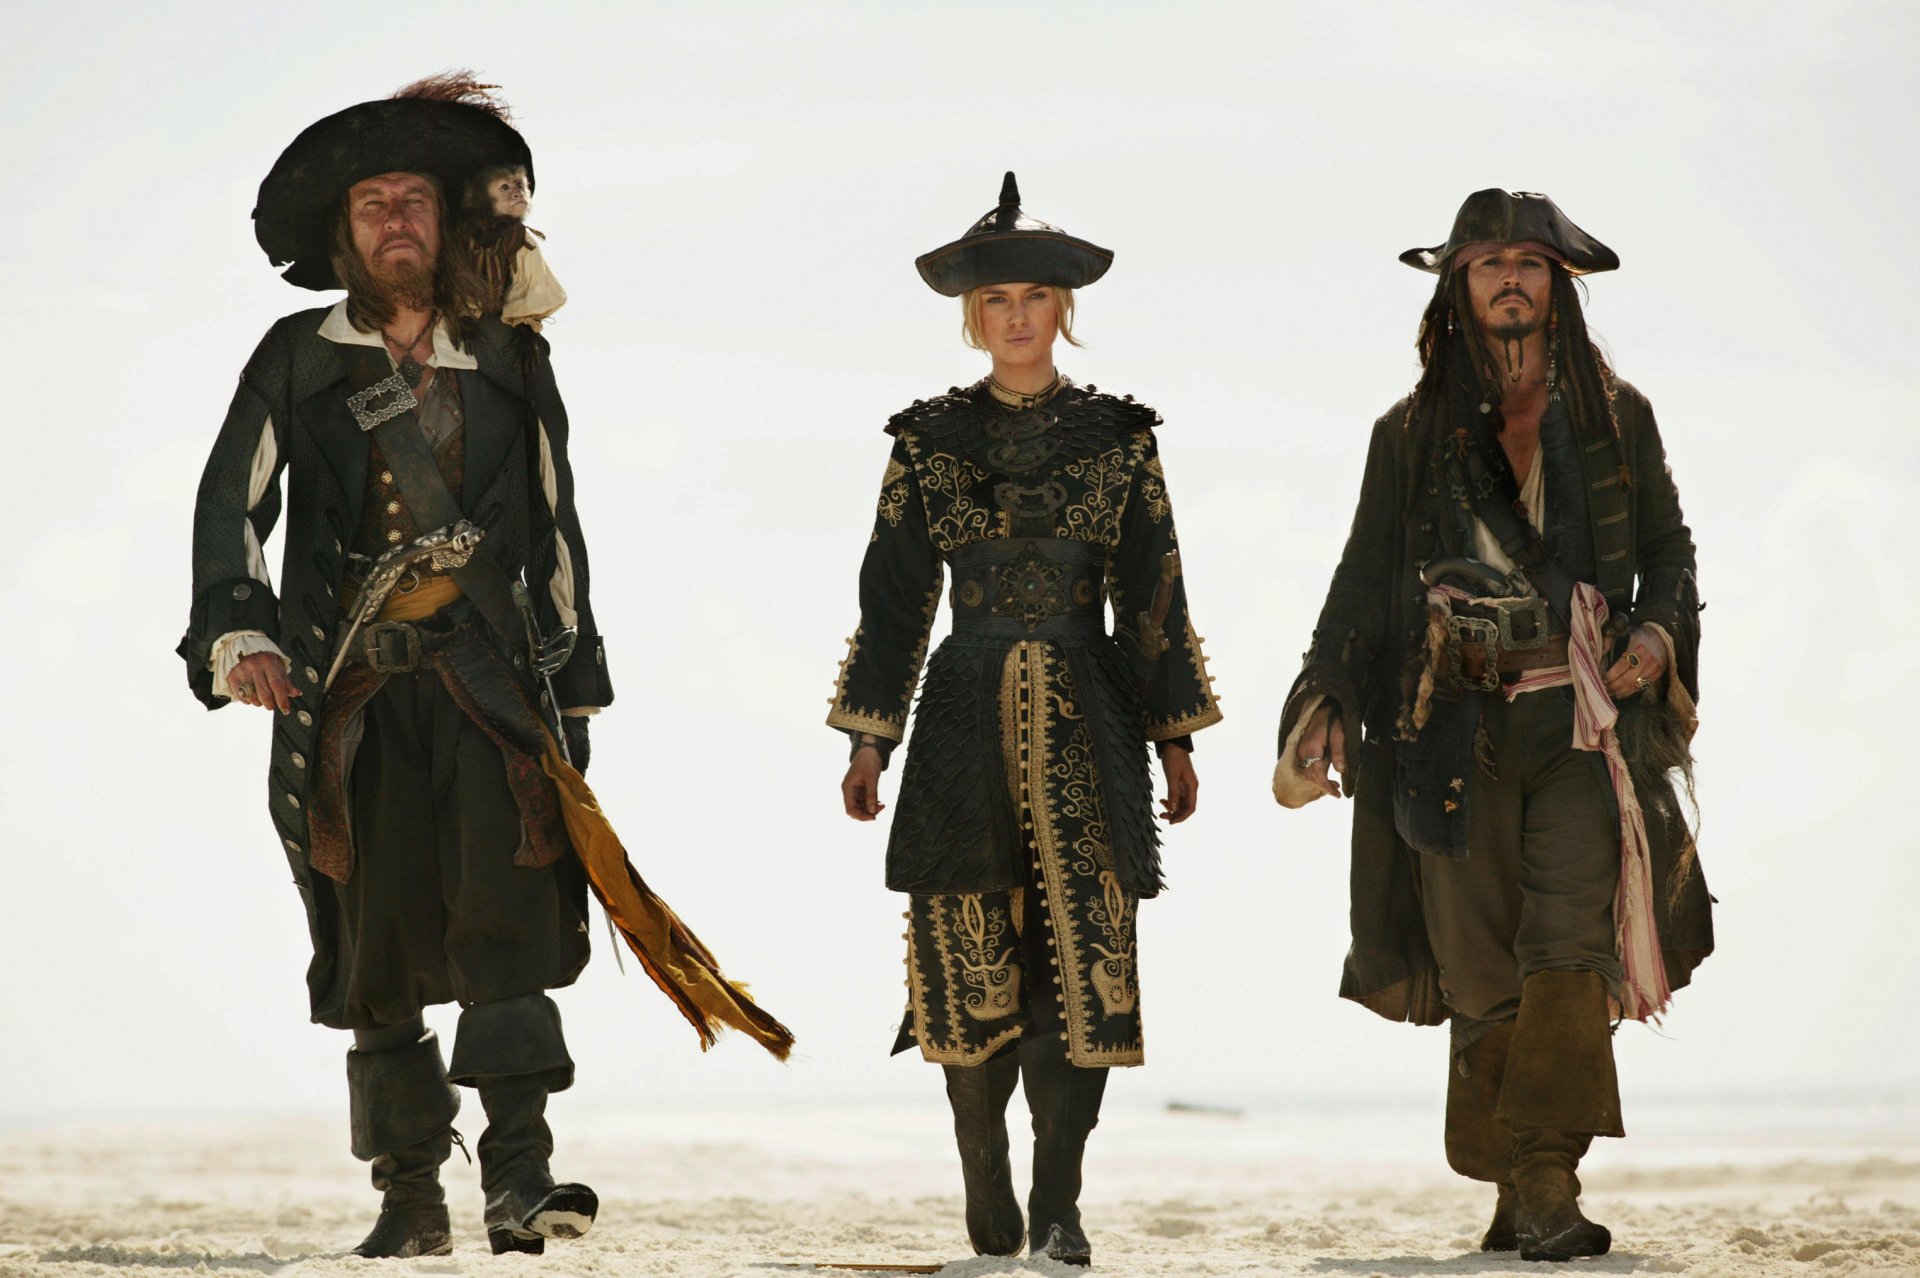 Пираты Карибского моря. Джек Воробей, Барбоса и Элизабет Суонн - обои нарабочий стол